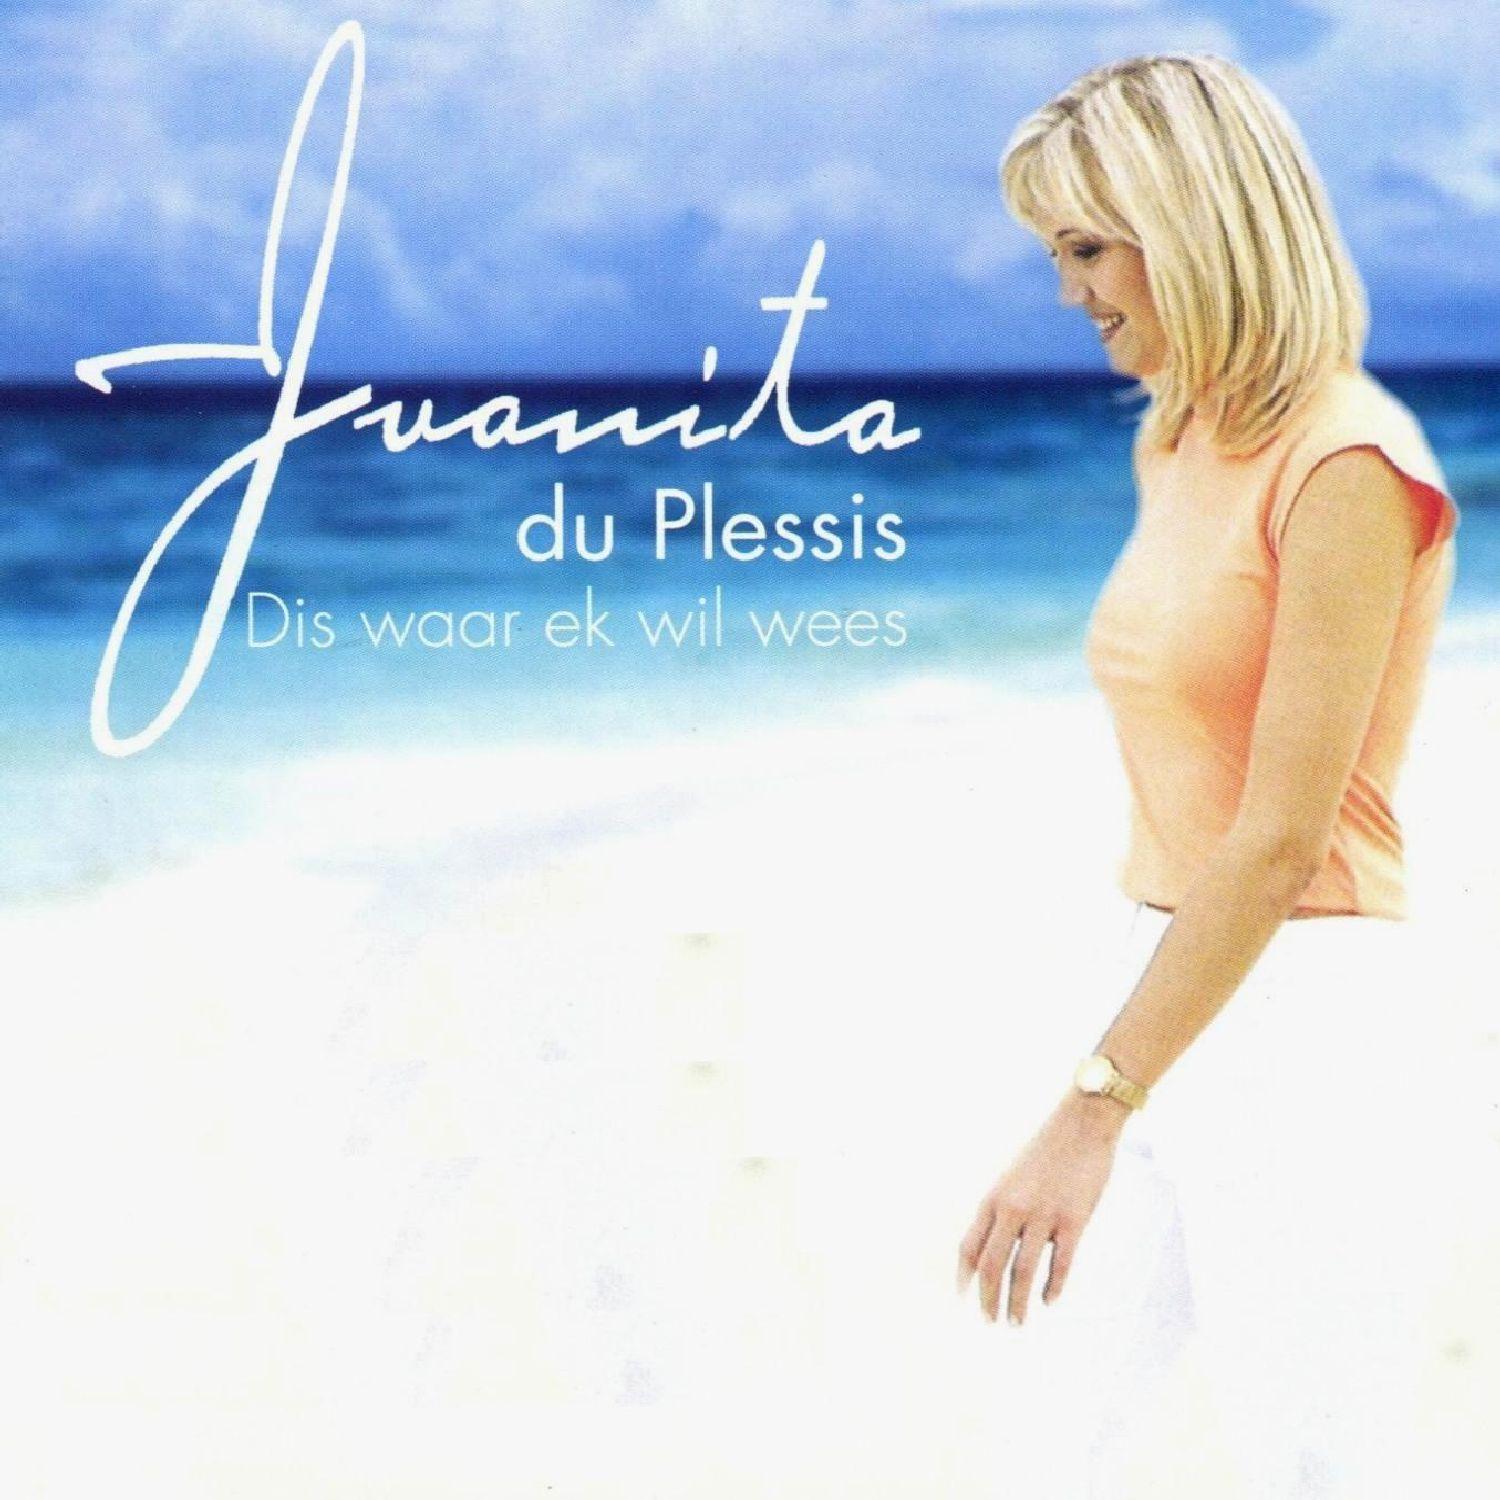 播 放 收 藏 分 享 下 载. Juanita du Plessis. 歌 手. 发 行 时 间.2015-07-17. 评 论. 